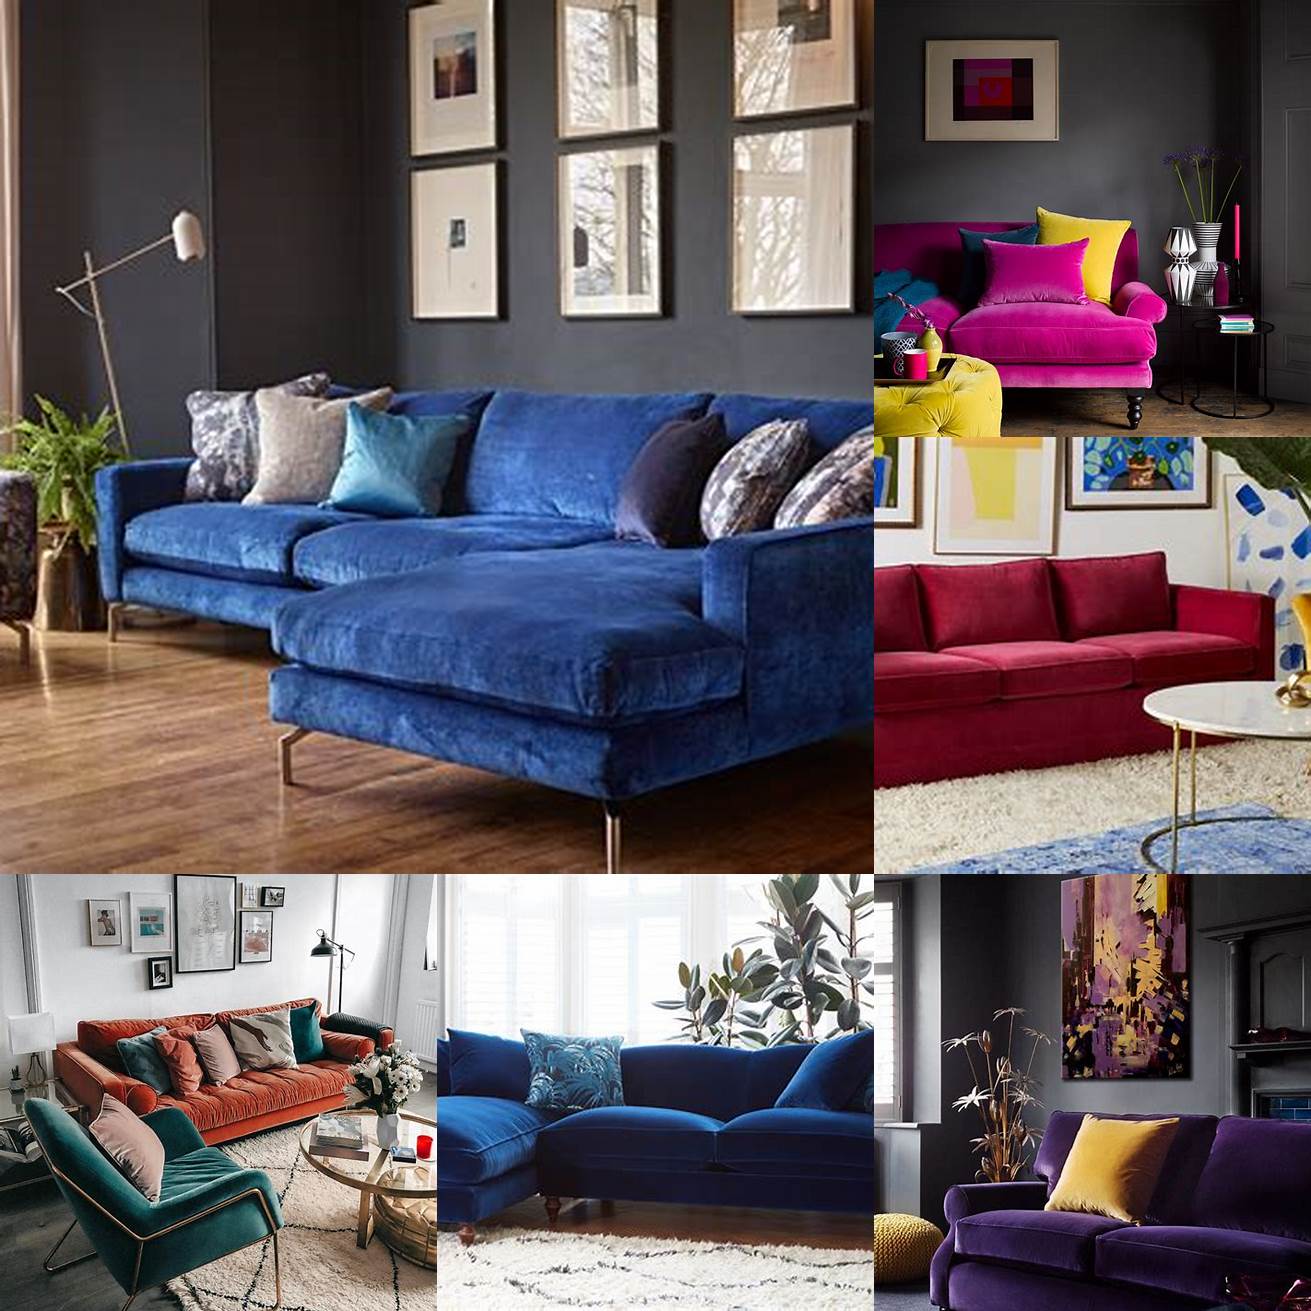 Velvet sofa in a bold color